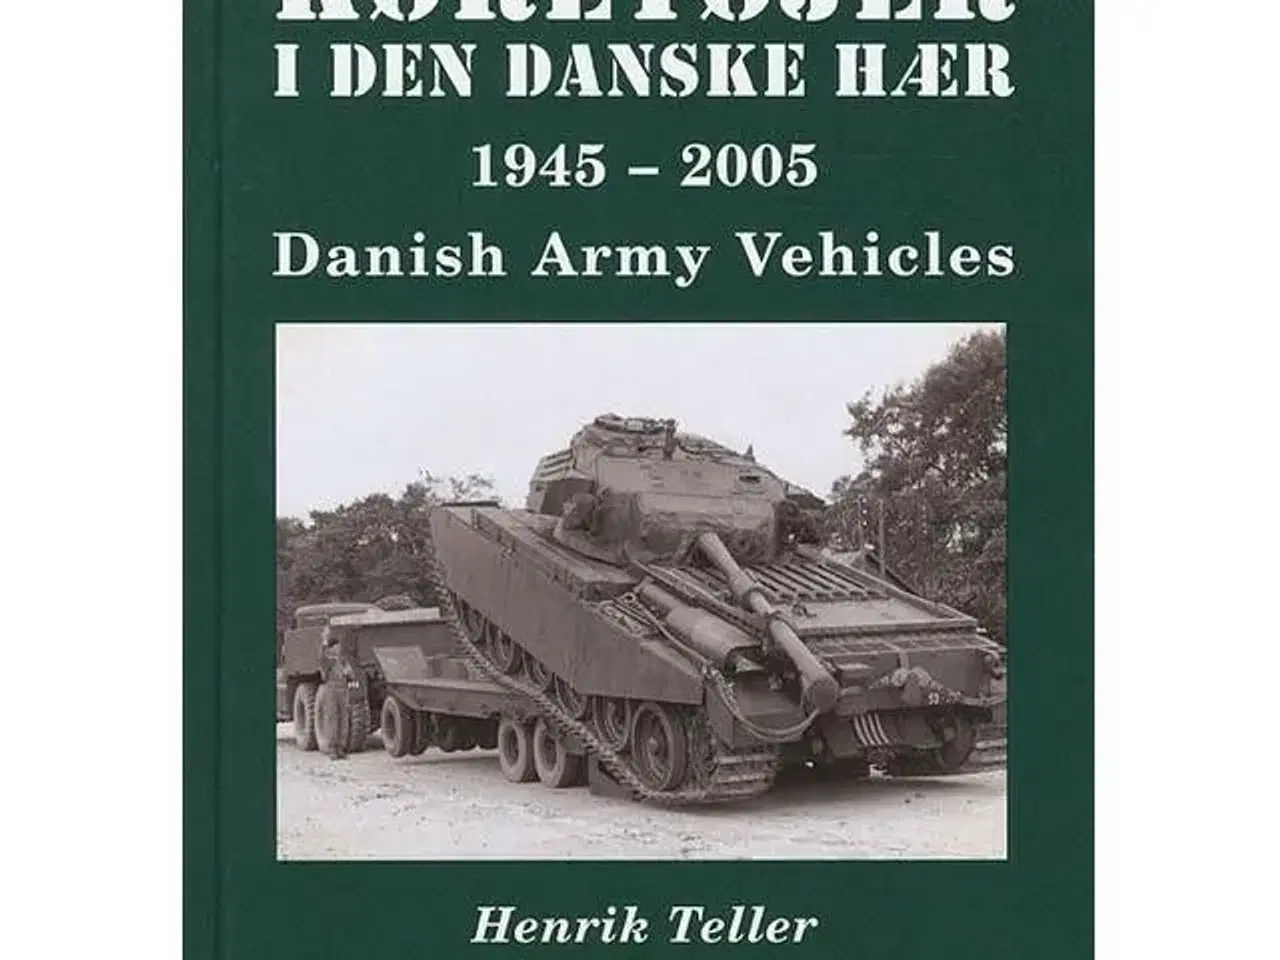 Billede 1 - Køretøjer i den danske hær 1945-2005